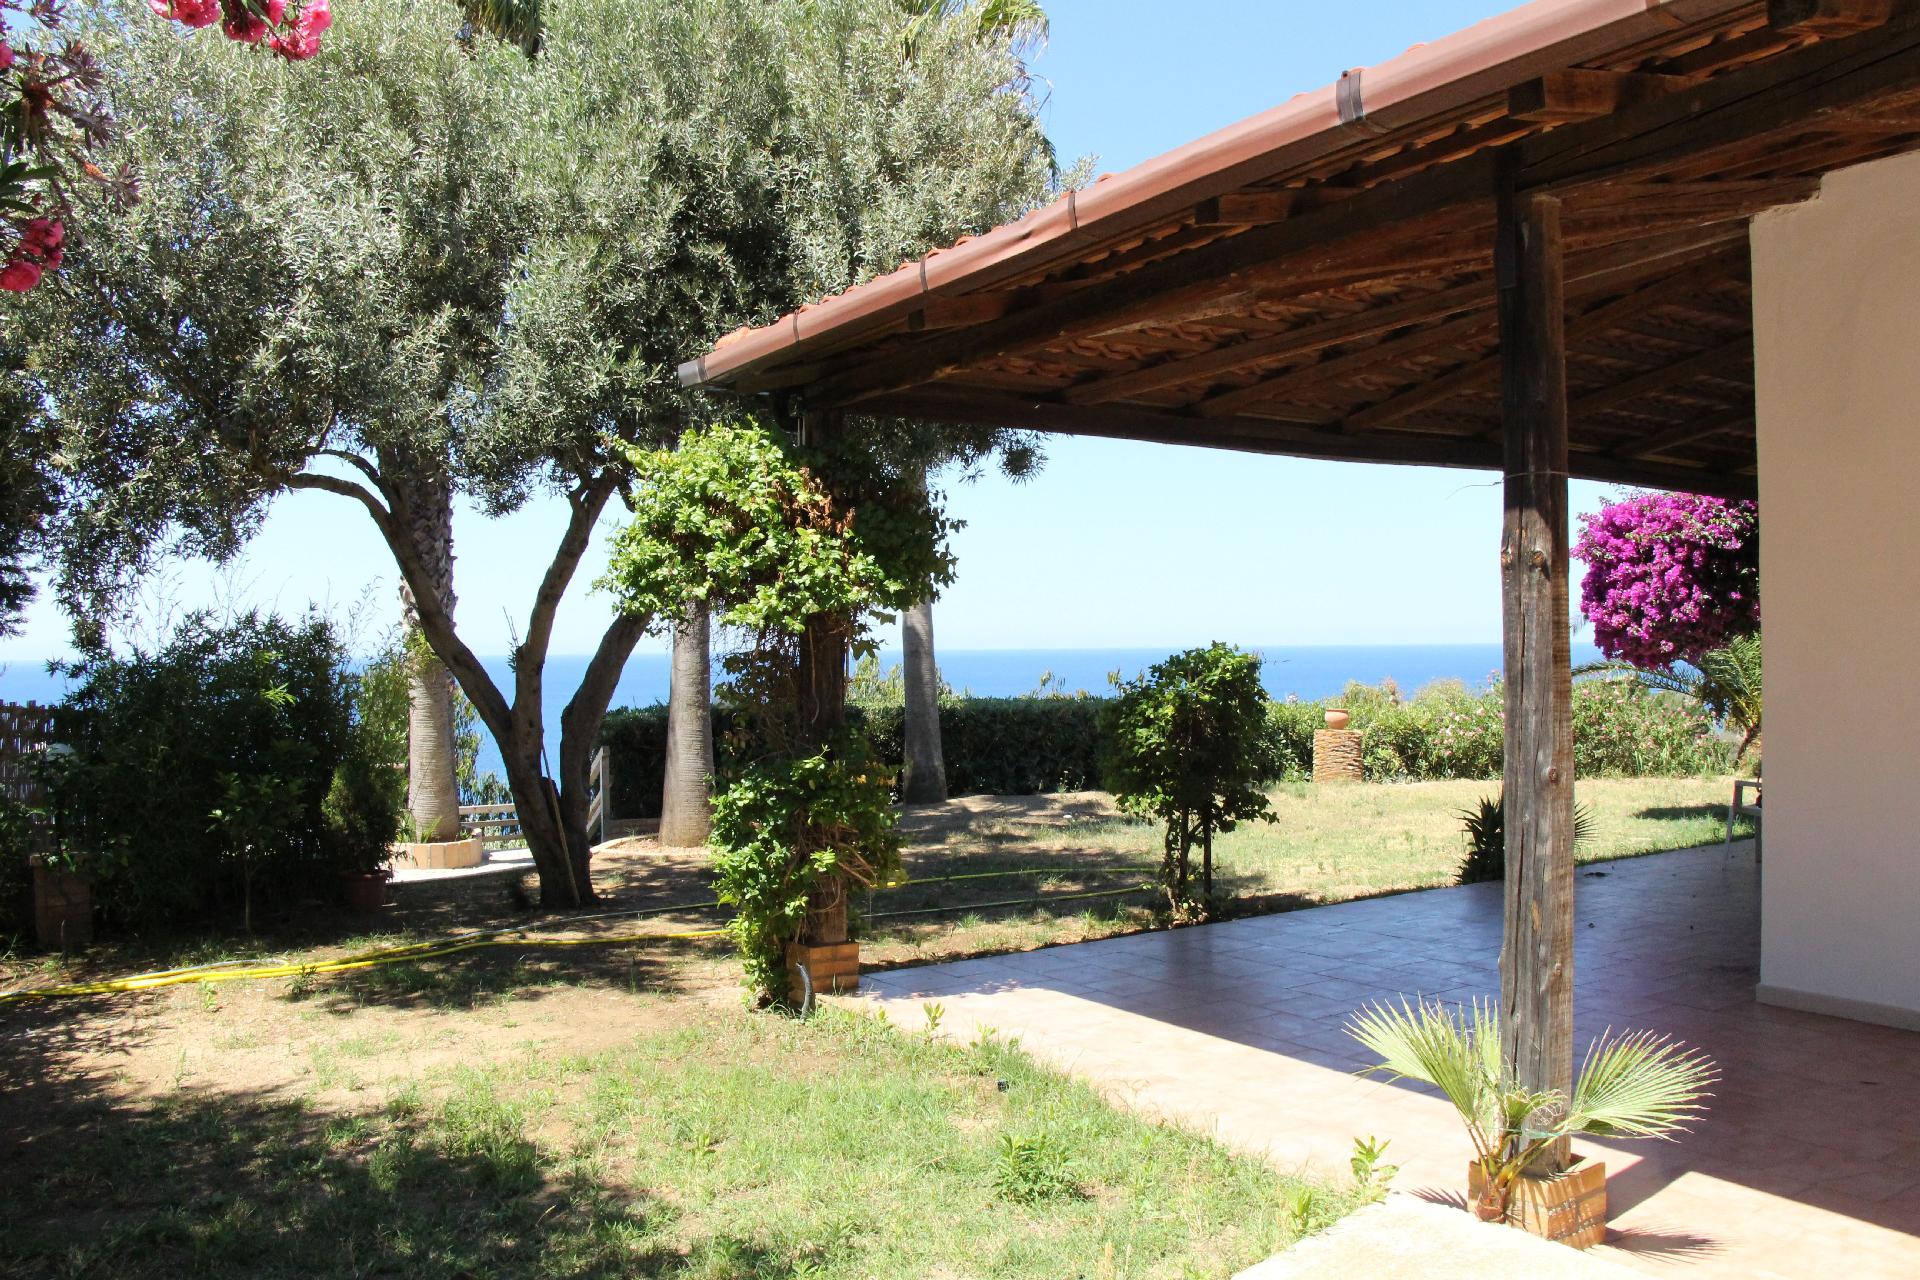 Villa Vanessa - der Traum auf den Klippen - Einzel Ferienhaus in Italien